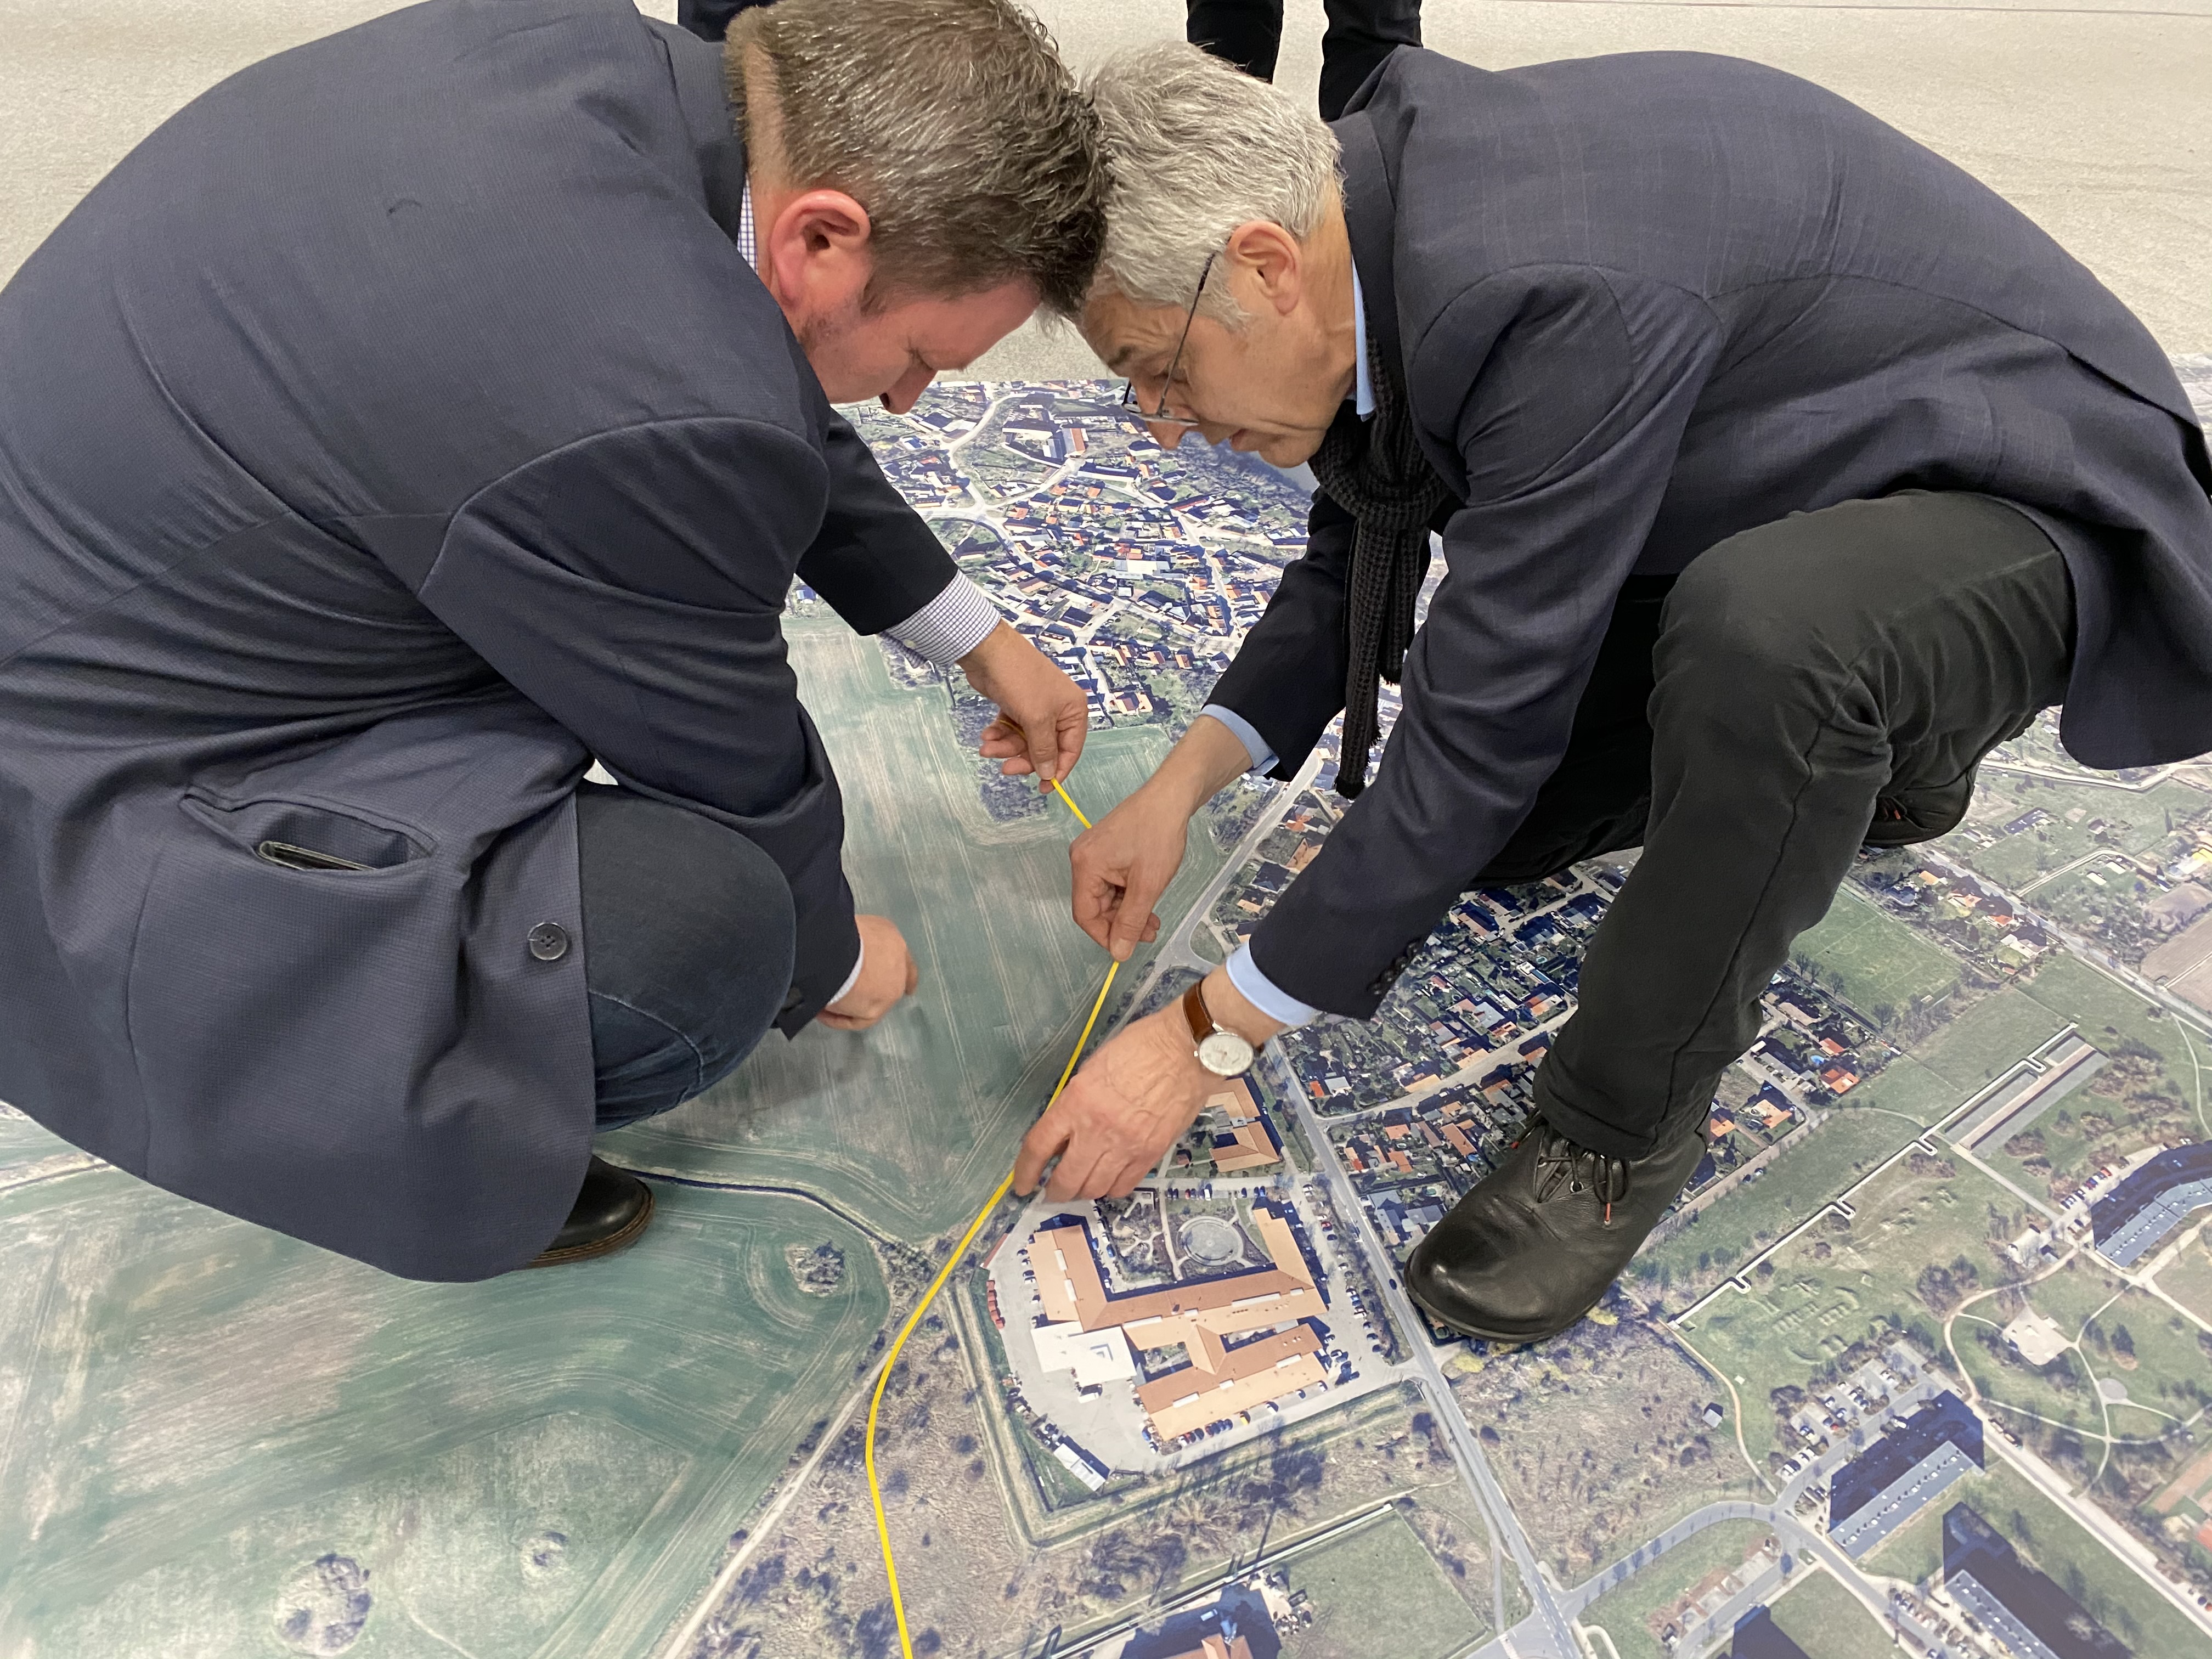 Auf dem Bild sind zwei Männer zu sehen, die auf einem Teppich hocken, welcher Heide-Nord abbildet. Mit einem gelben Klebeband markieren sie auf der Karte, wo die Straßenbahn zukünftig verlaufen könnte.